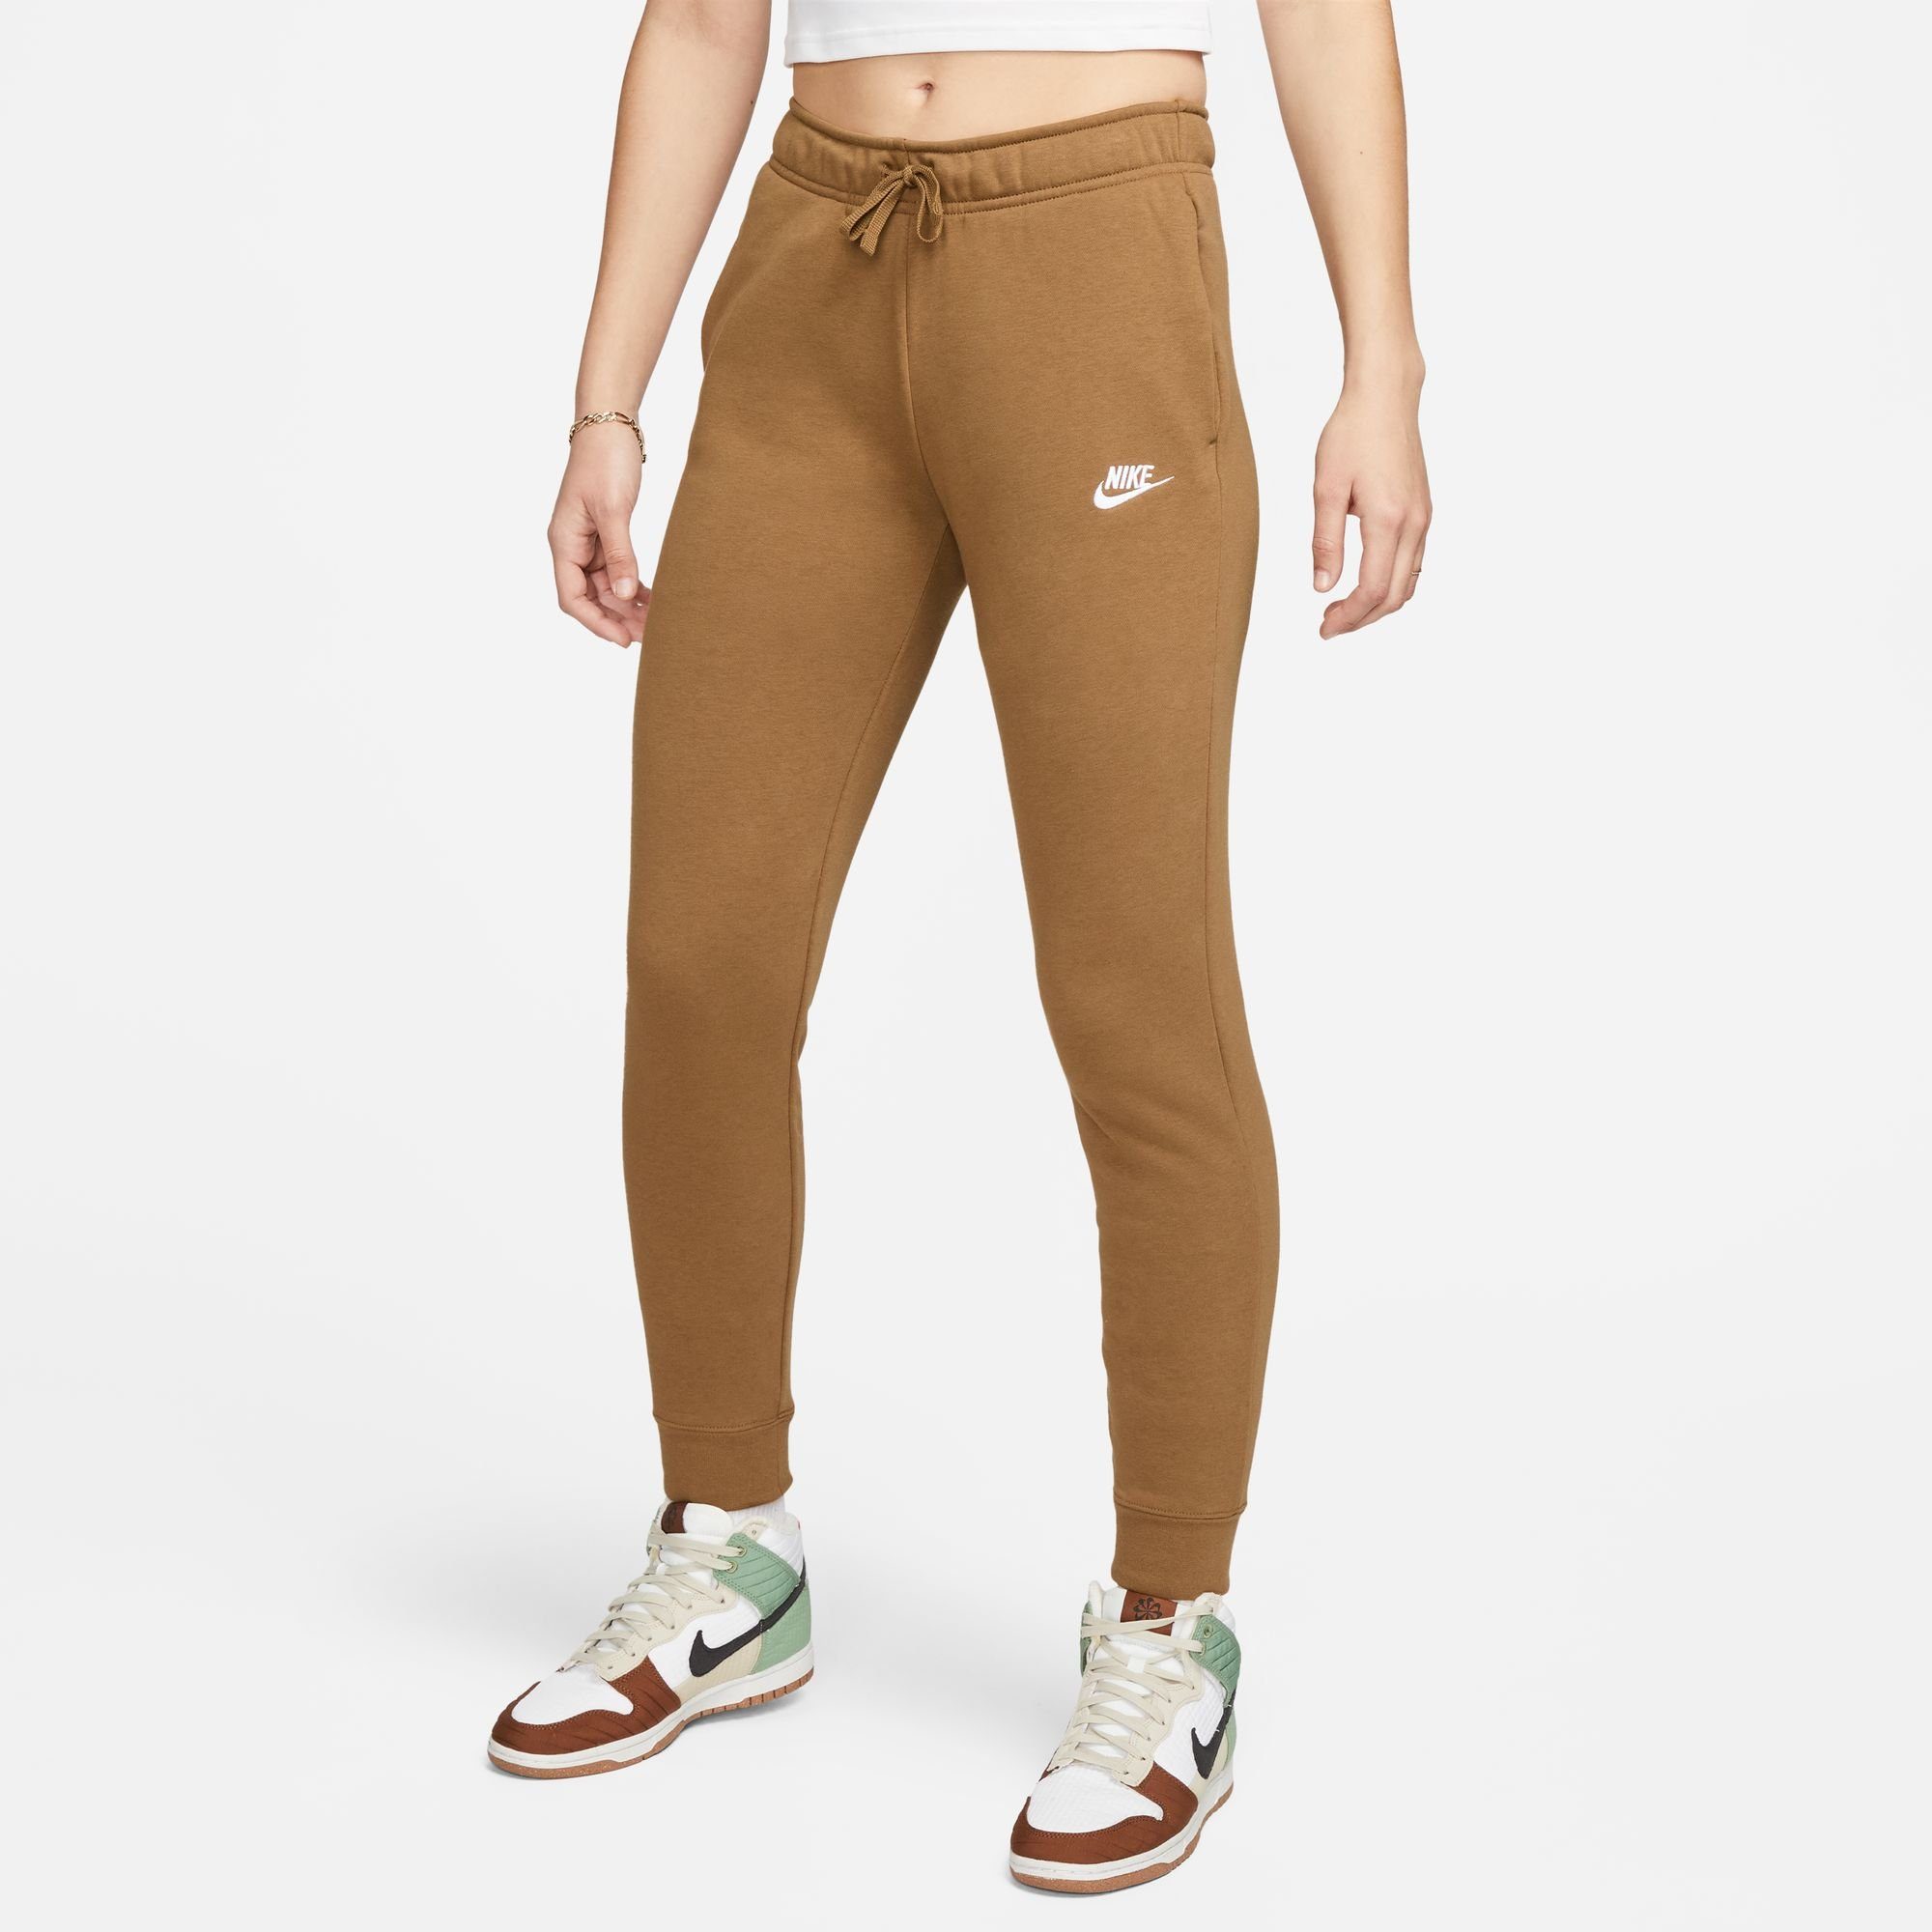 BROWN/WHITE JOGGERS WOMEN'S MID-RISE Nike FLEECE CLUB Sportswear ALE Jogginghose